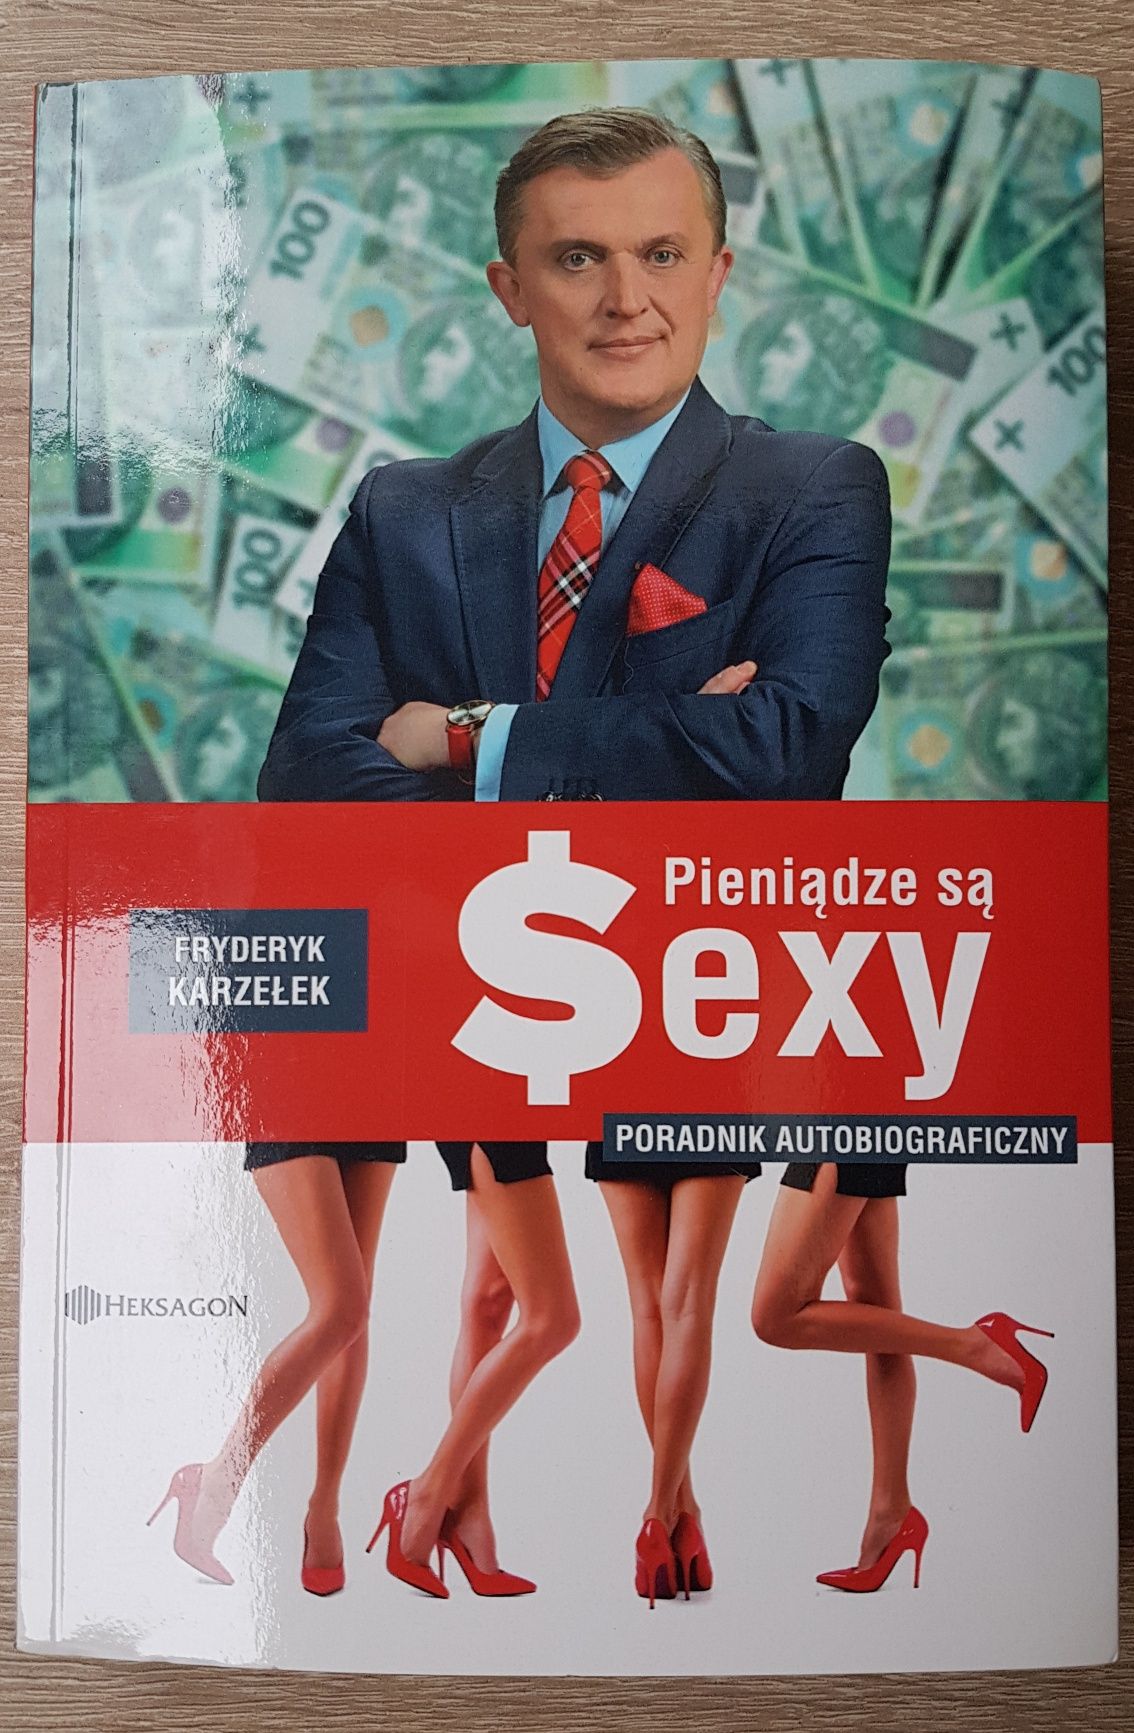 "Pieniądze są sexy" Fryderyk Karzełek Nowa!